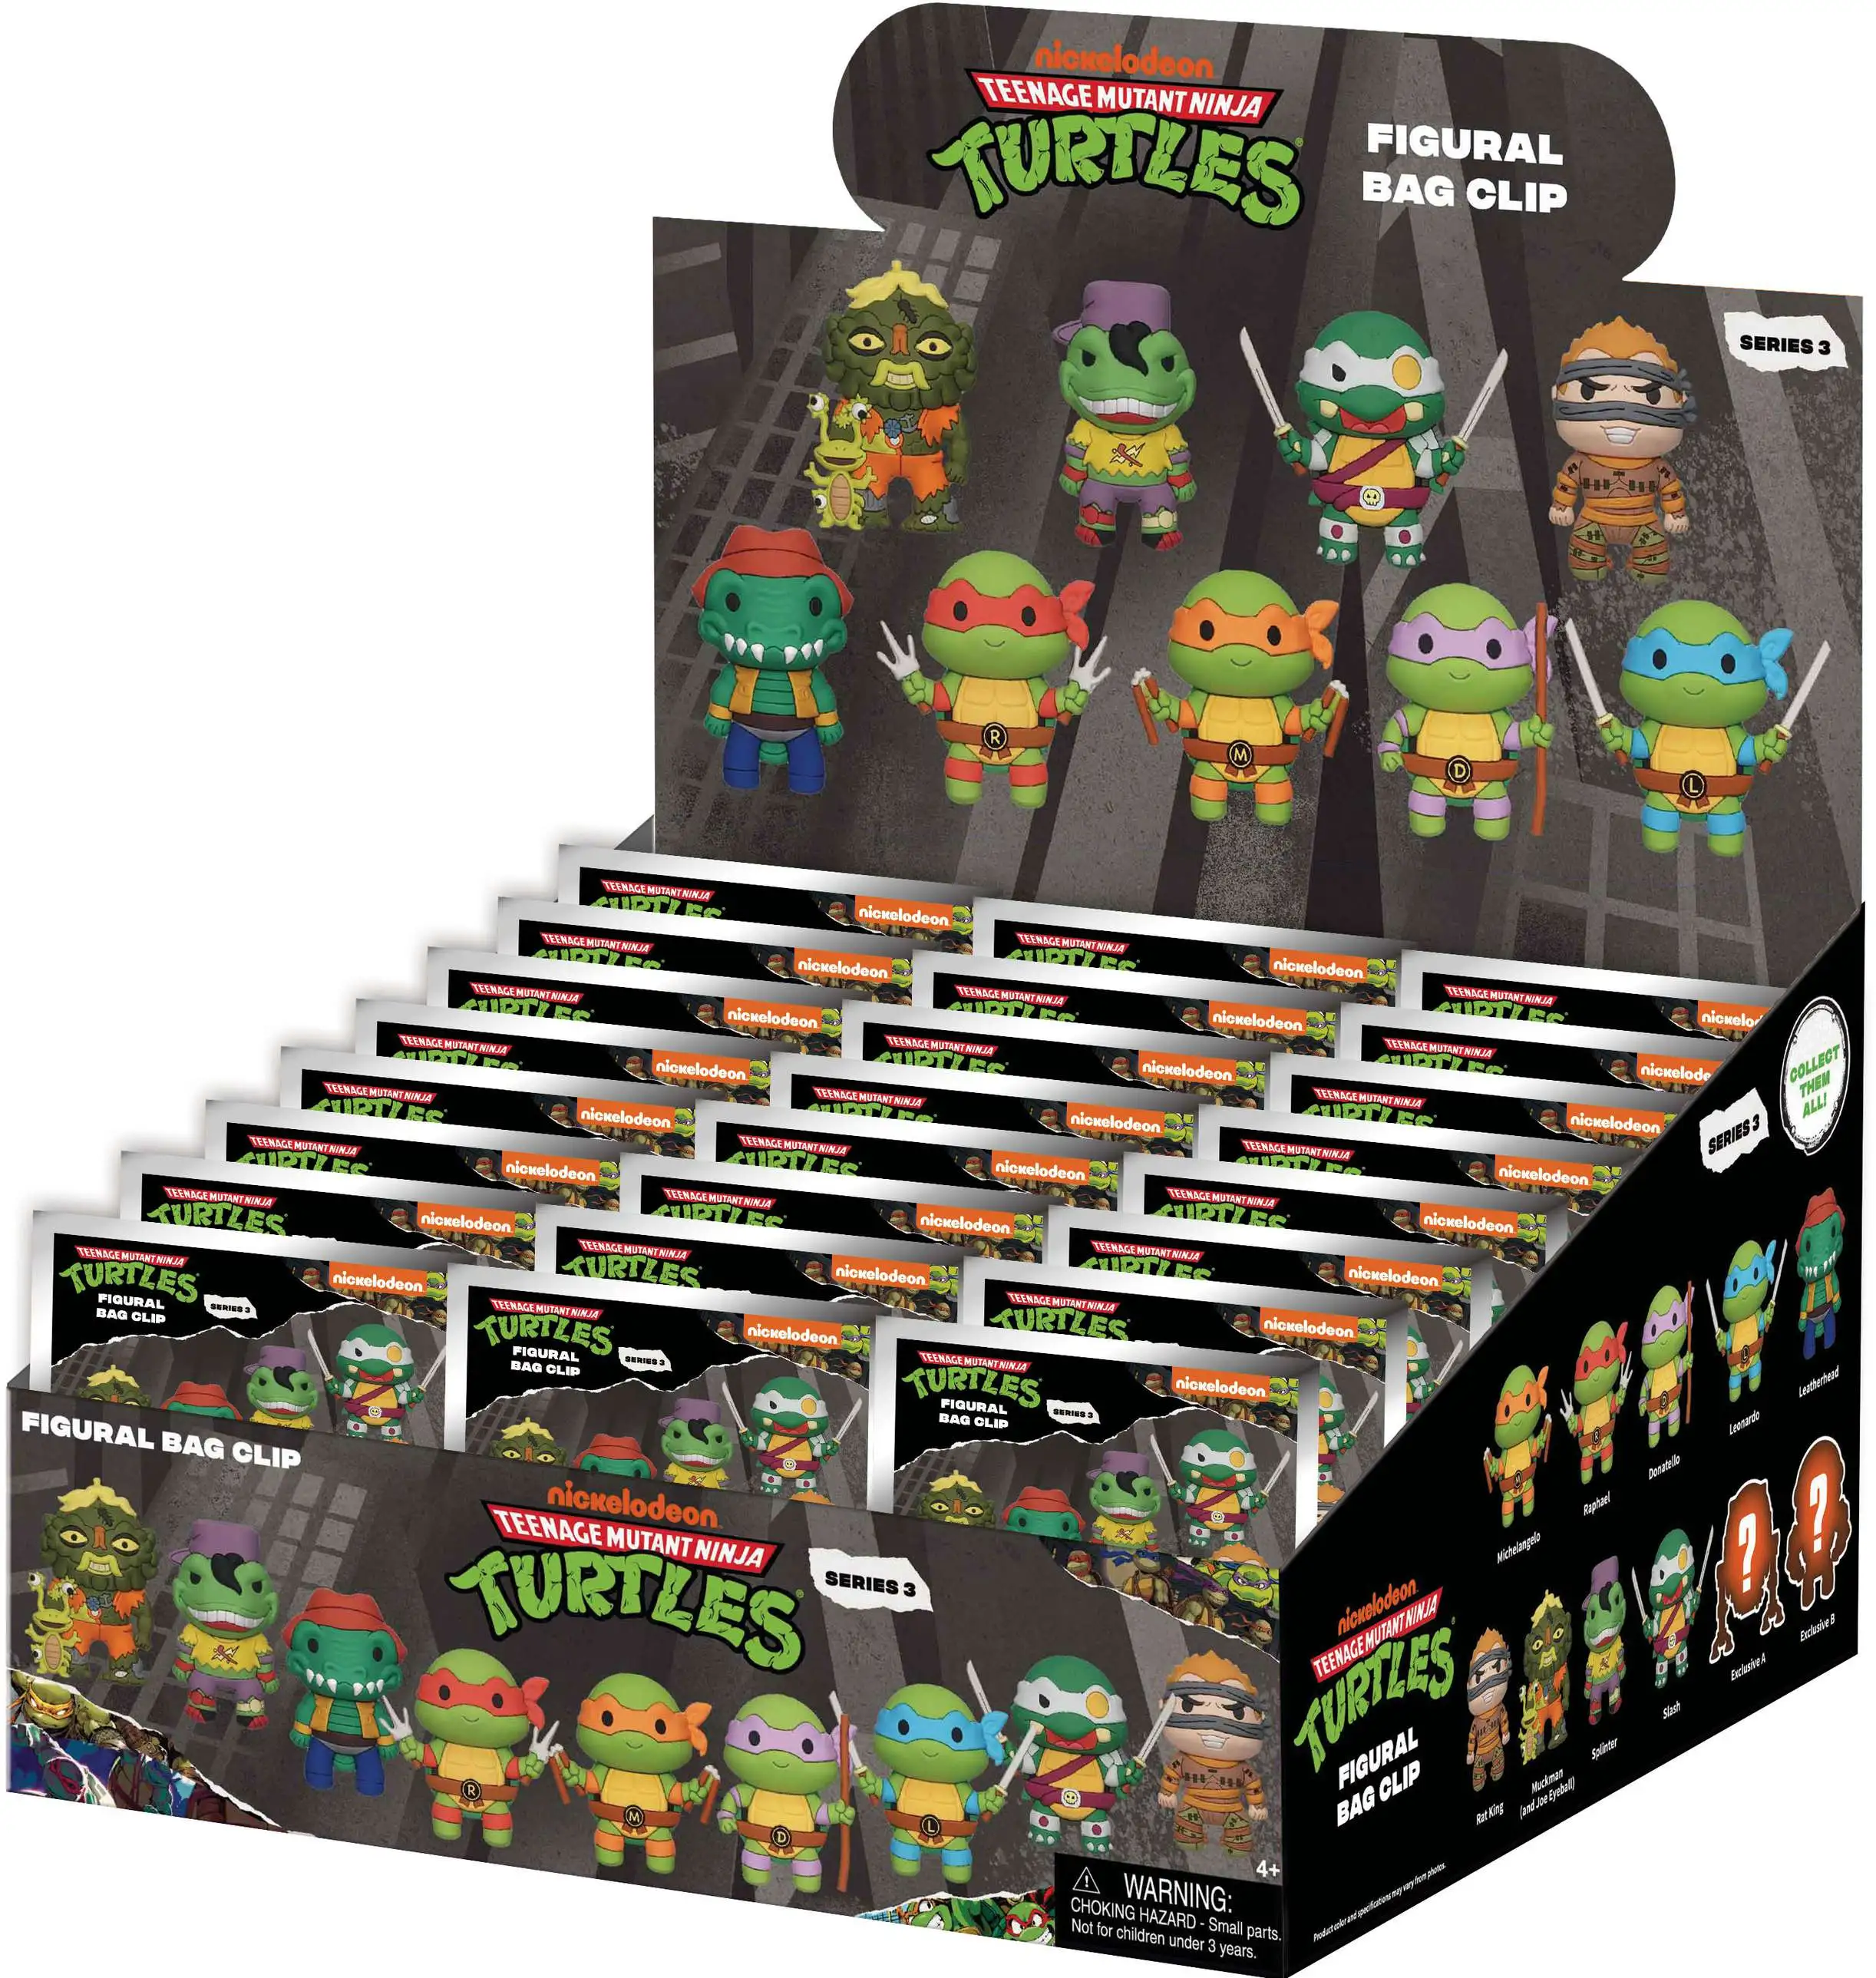 Teenage Mutant Ninja Turtles Series 3 Teenage Mutant Ninja Turtles